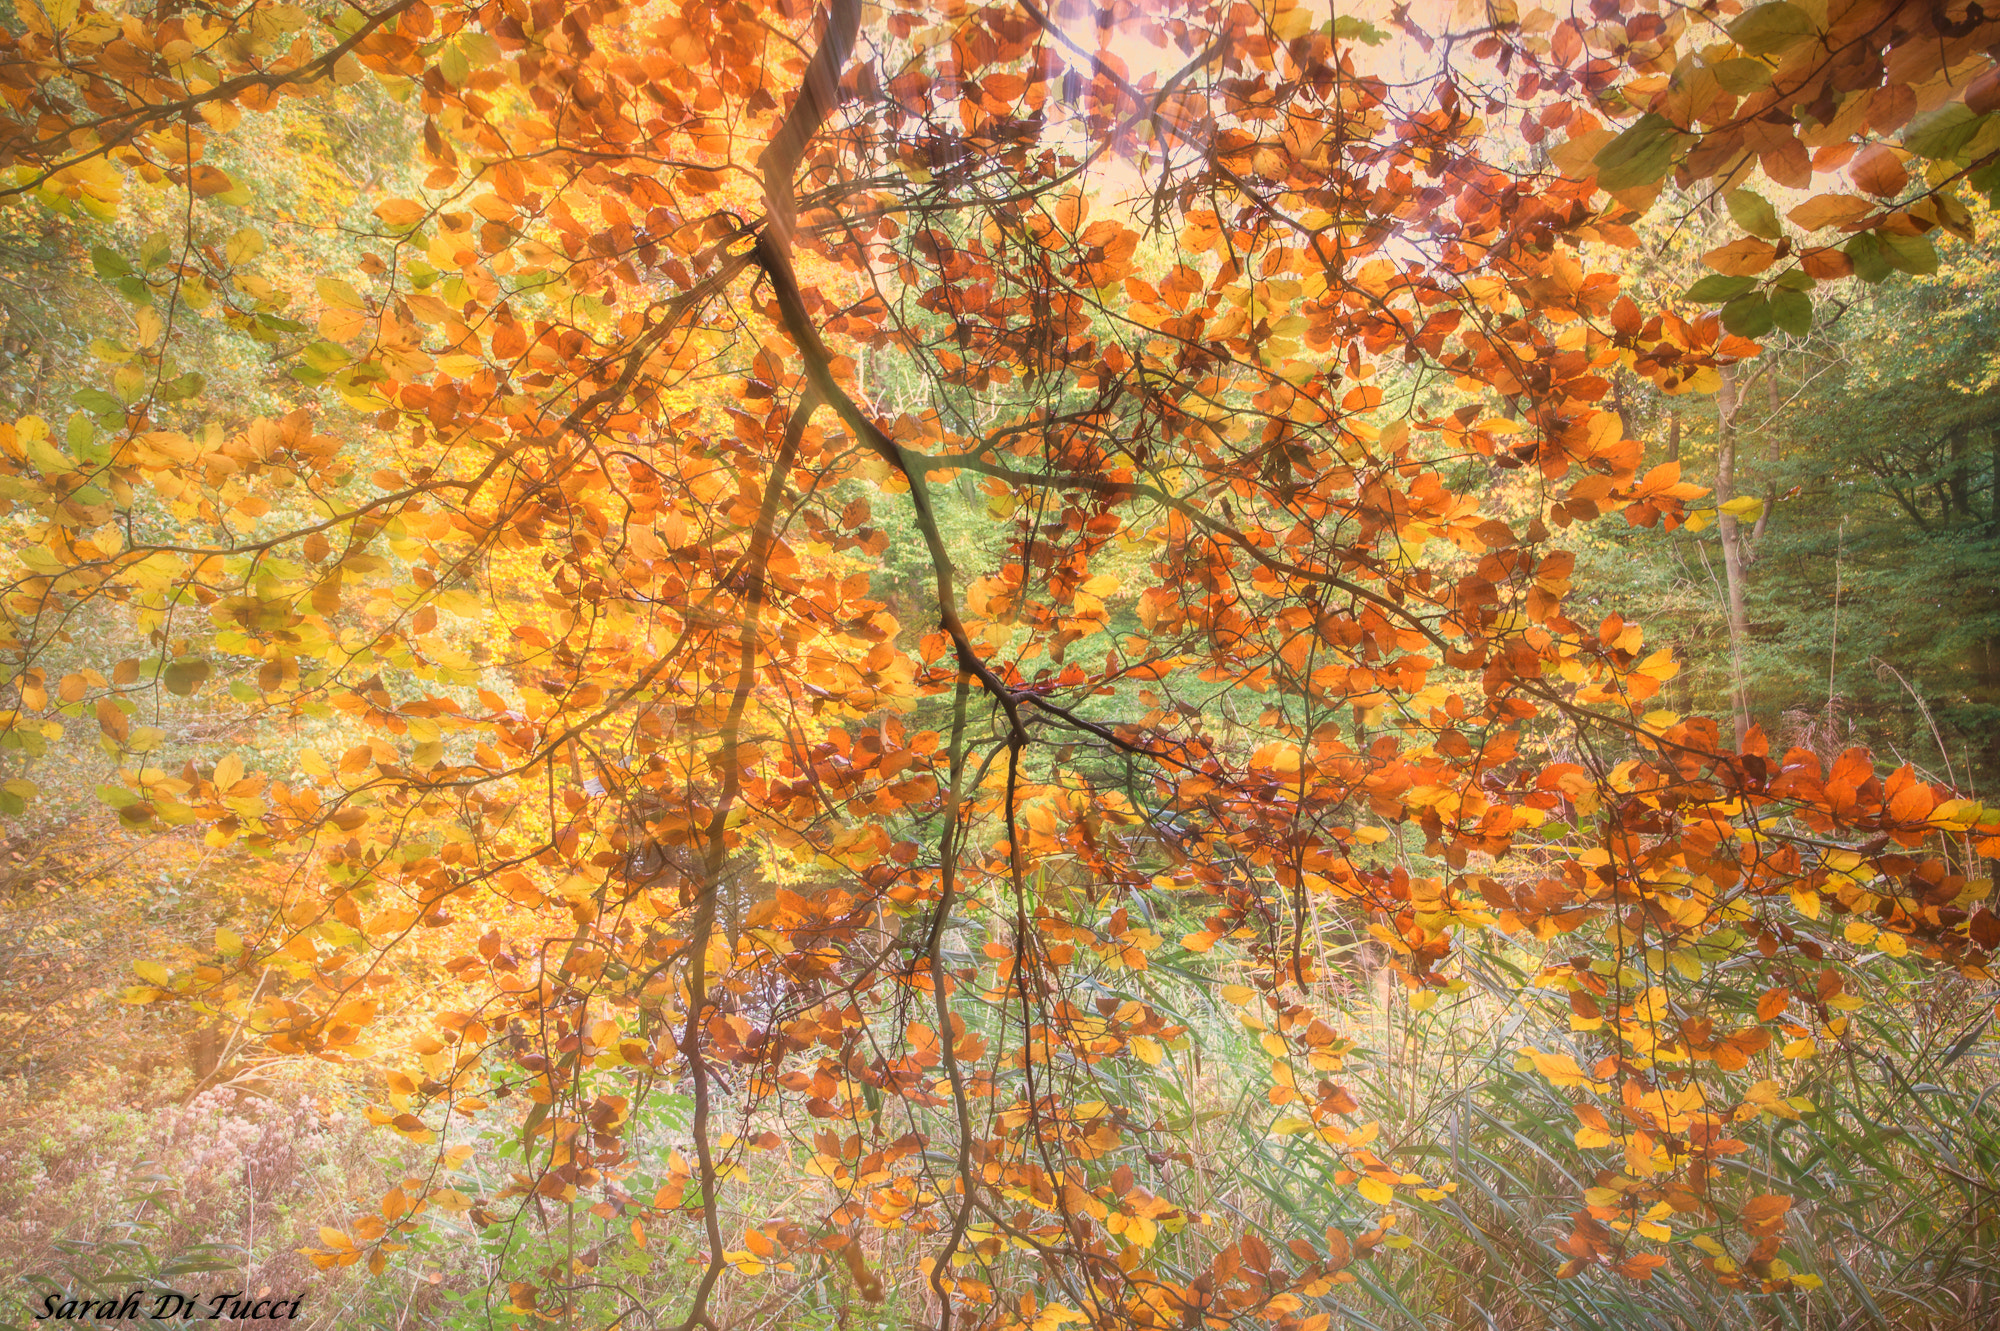 Sony SLT-A58 sample photo. Autumn photography